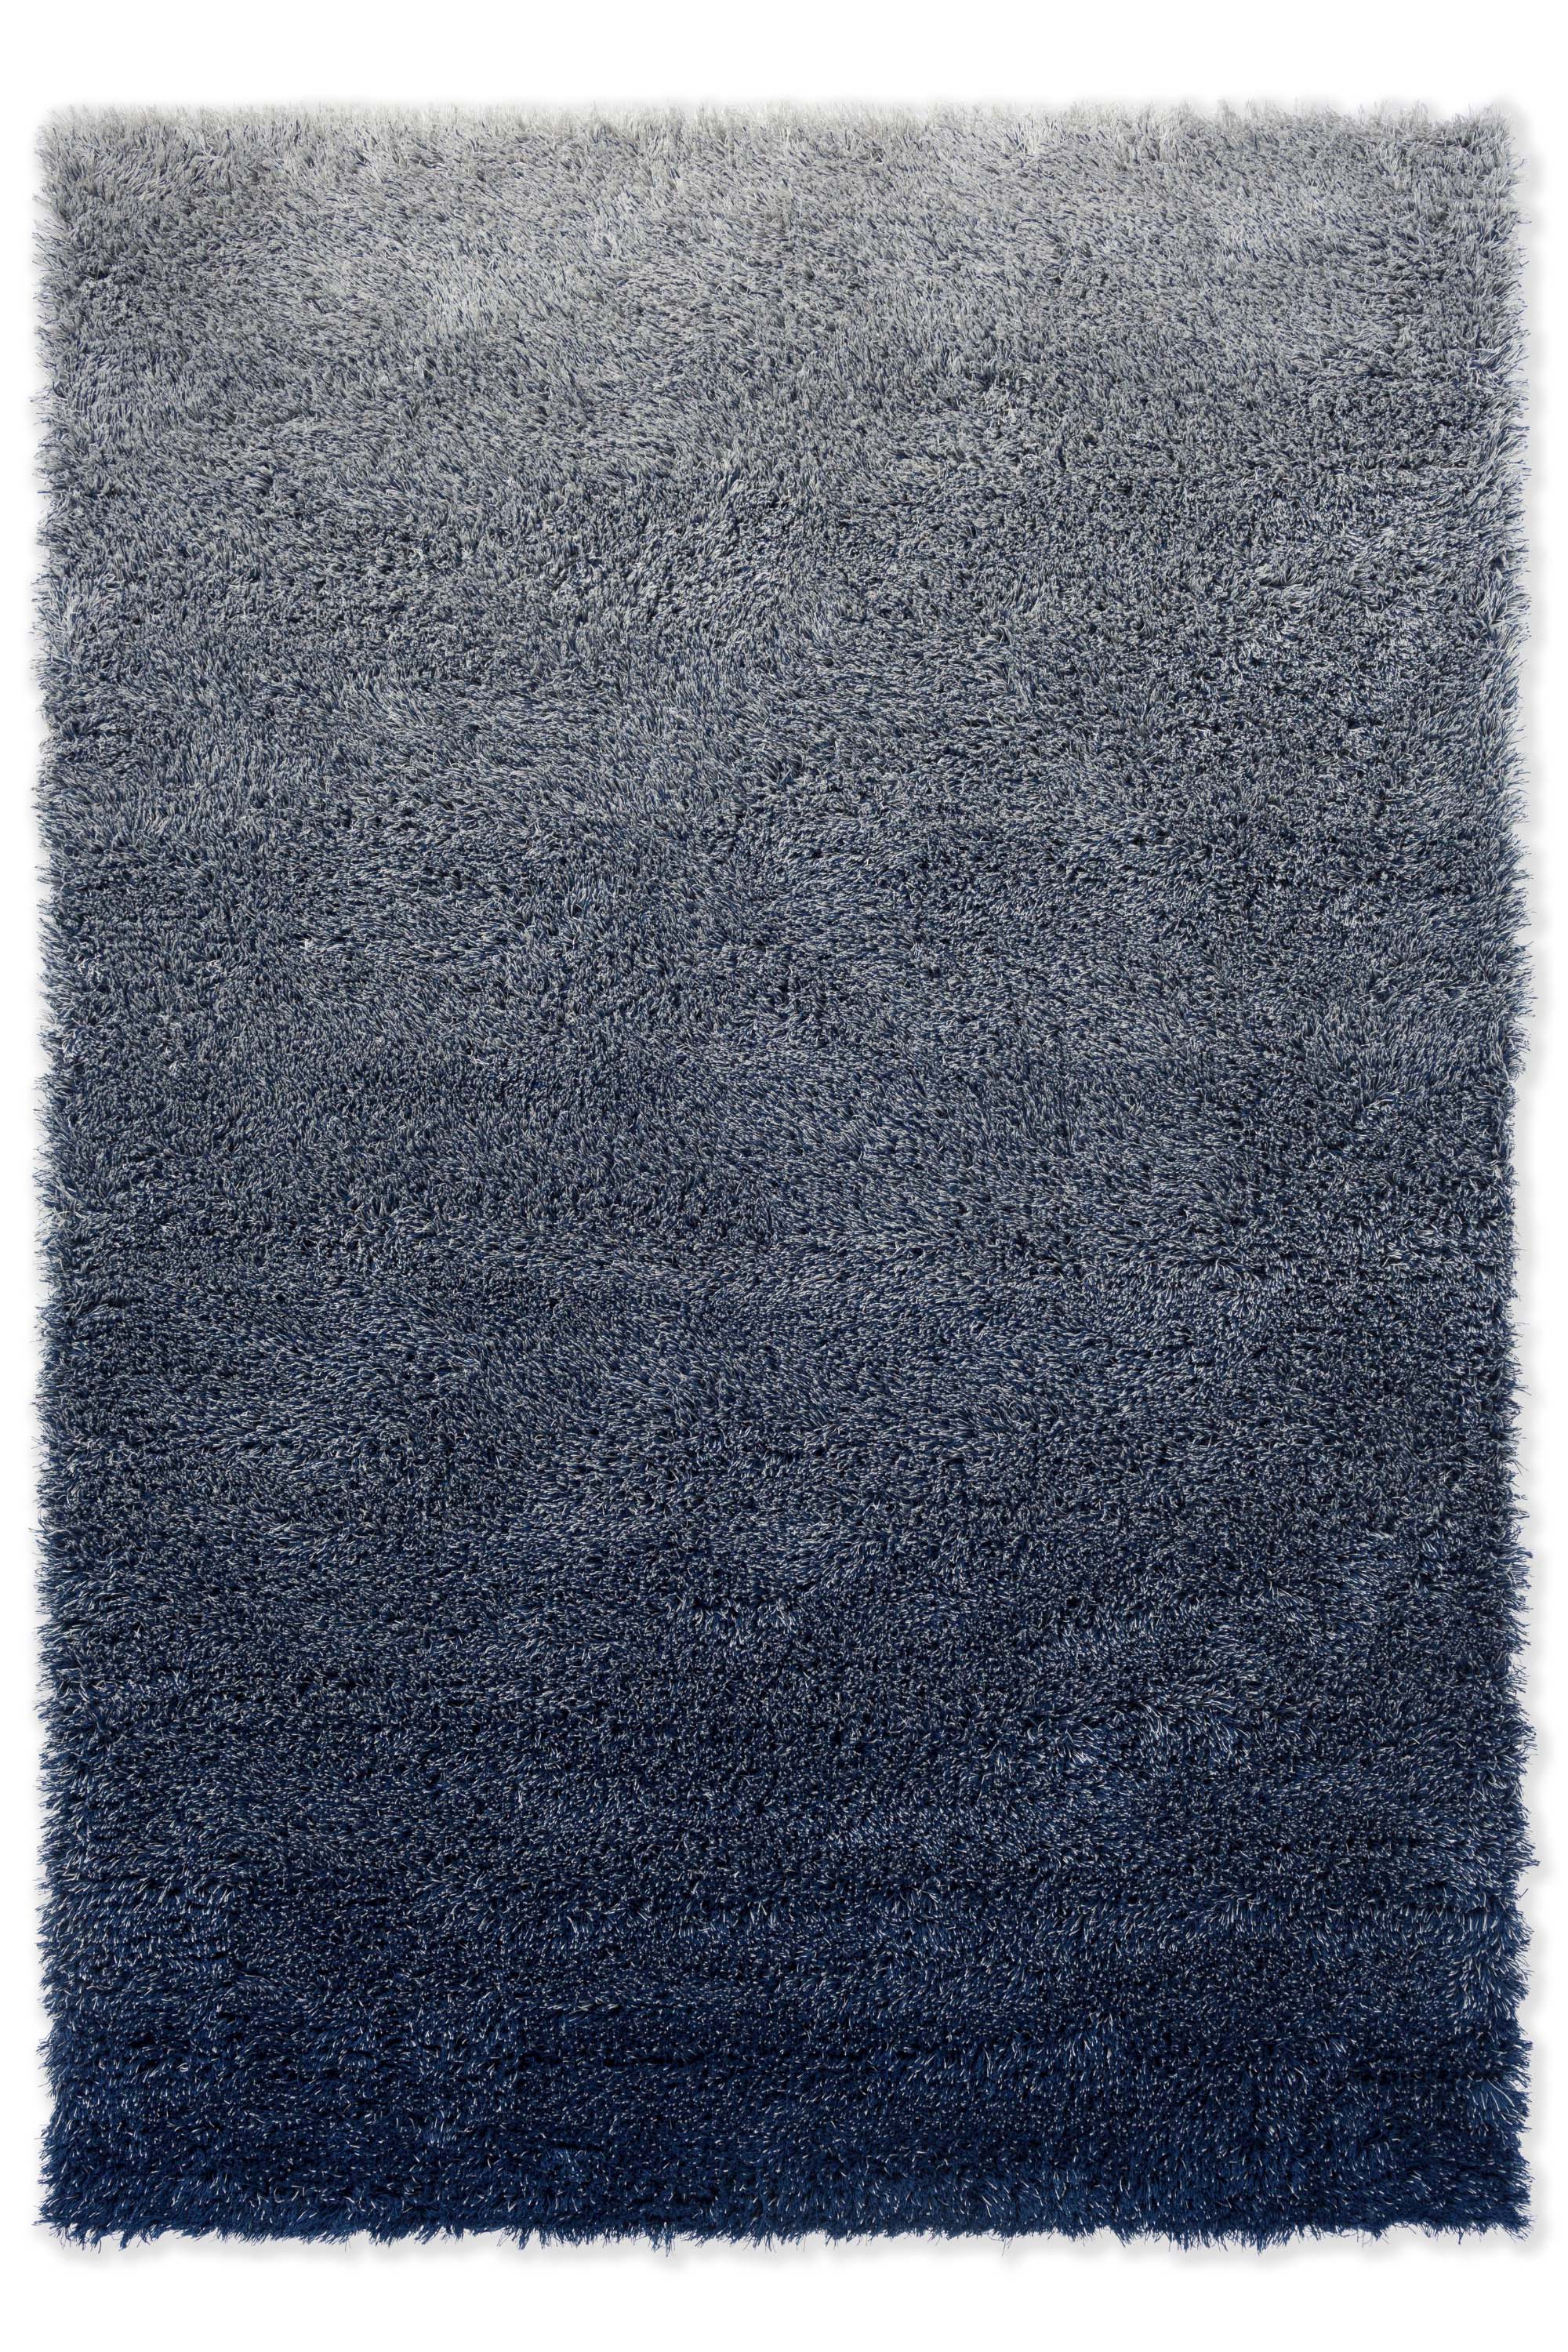 Plain blue rug with shaggy pile